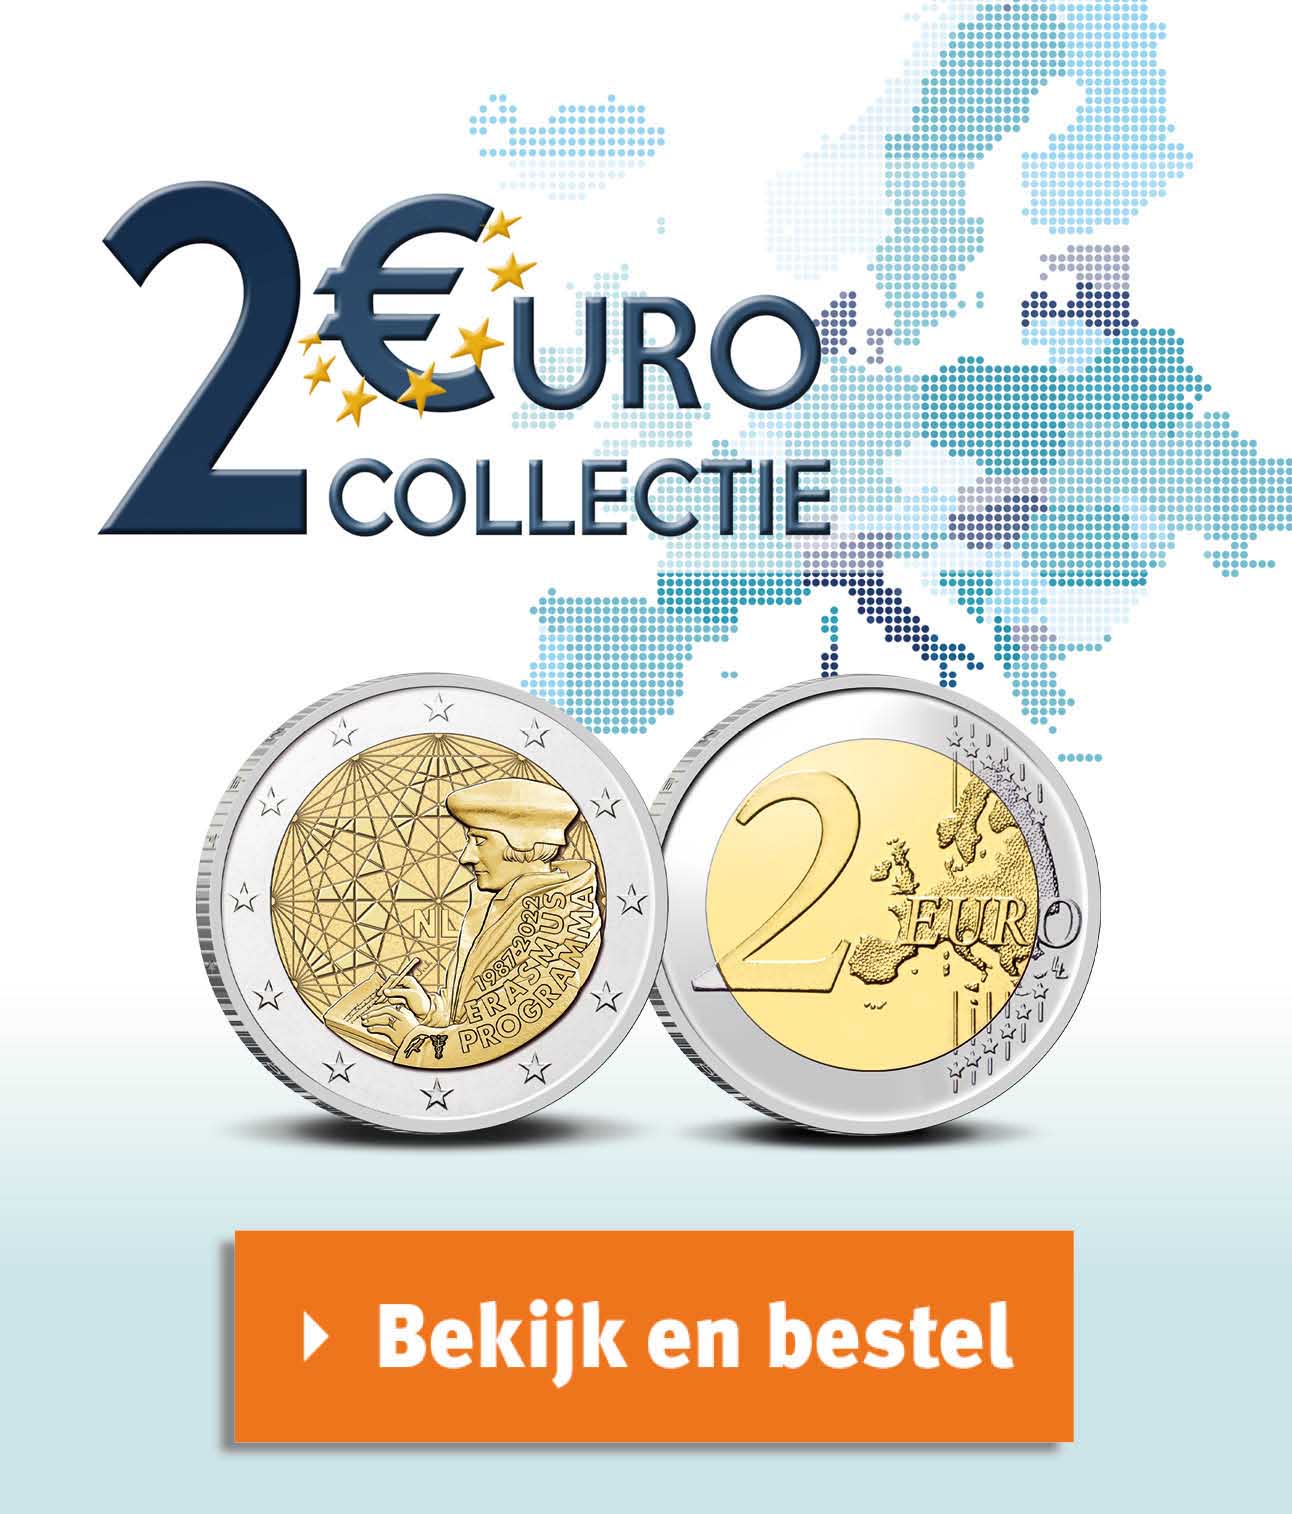 Bekijk en bestel: 2 euro collectie